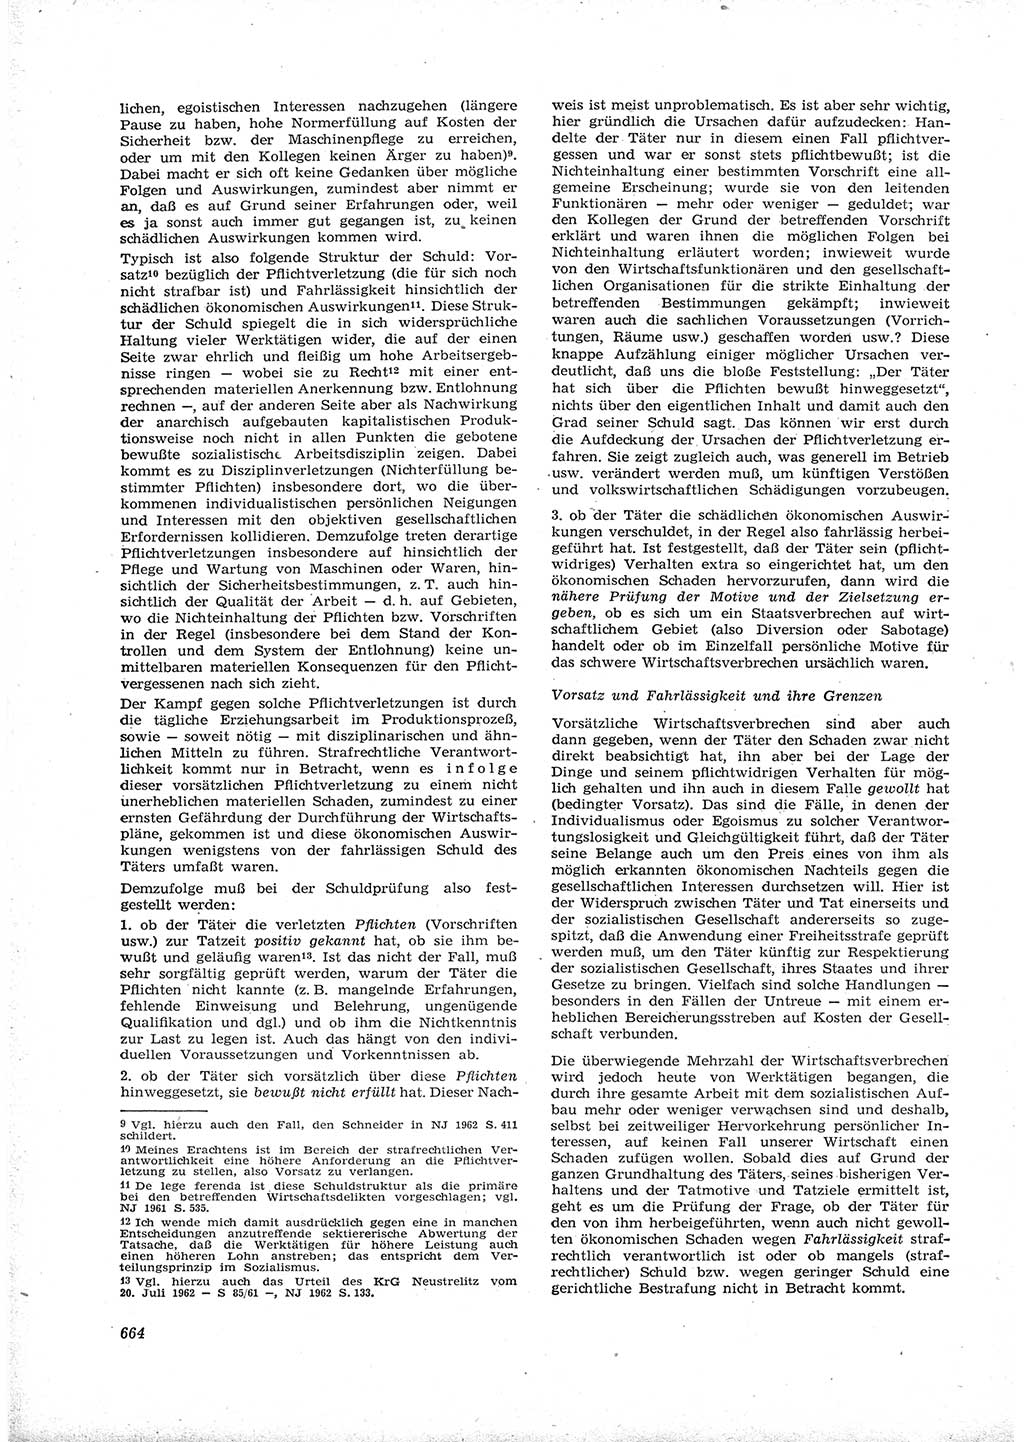 Neue Justiz (NJ), Zeitschrift für Recht und Rechtswissenschaft [Deutsche Demokratische Republik (DDR)], 16. Jahrgang 1962, Seite 664 (NJ DDR 1962, S. 664)